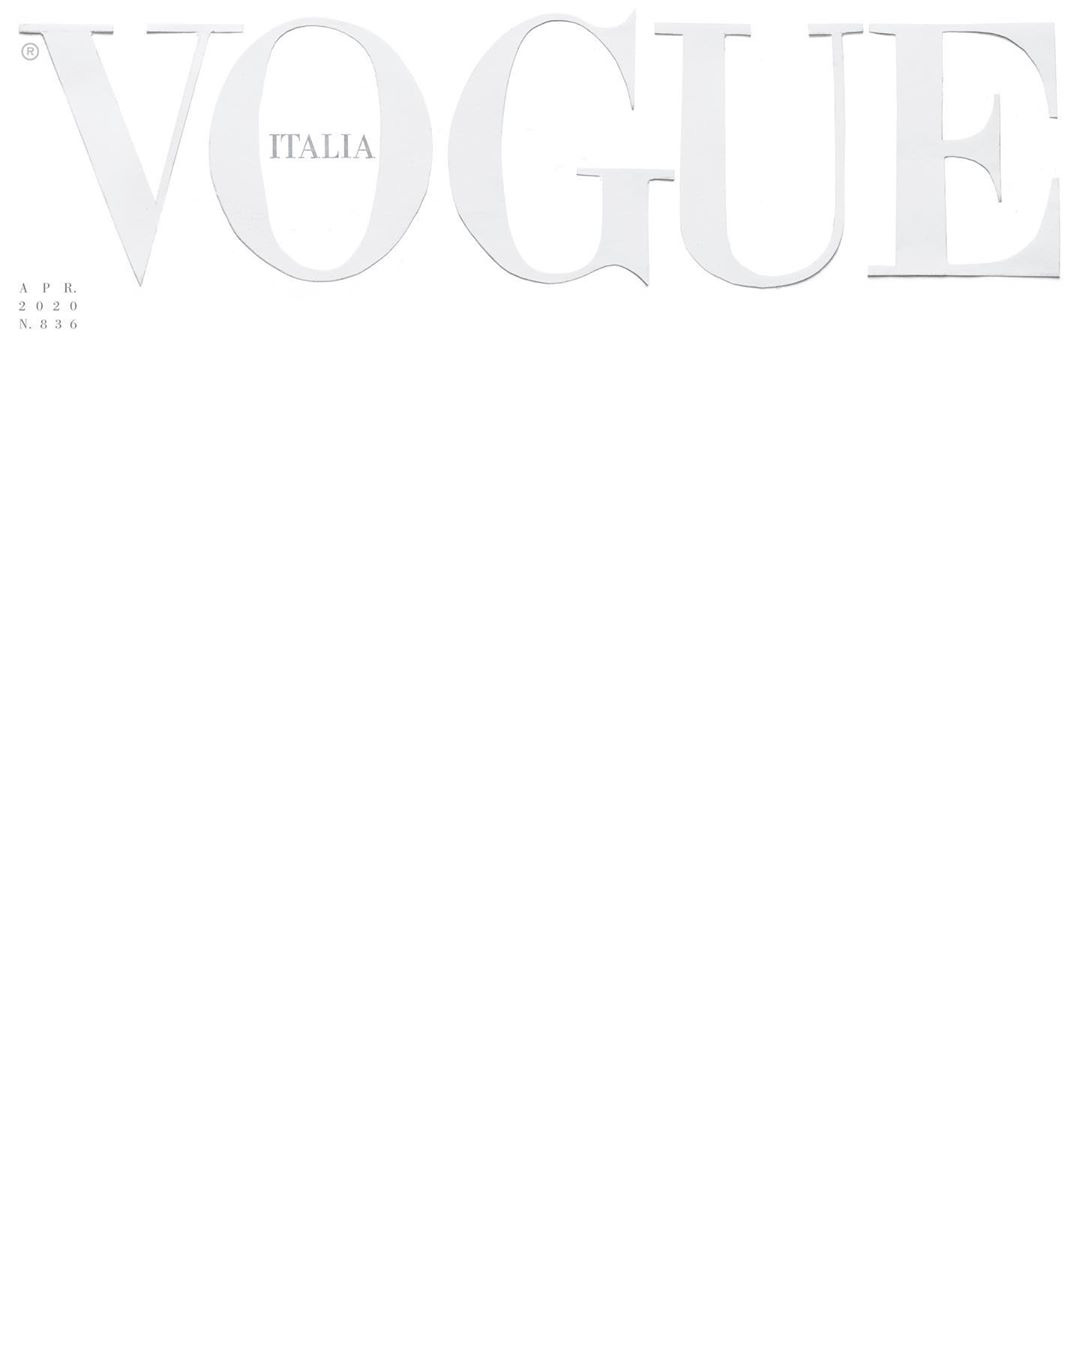 Thế giới thời trang không thể thiếu tạp chí Vogue Ý, nơi tập hợp những bộ sưu tập vàng của các nhà mốt danh tiếng. Hãy xem những bức ảnh đẹp nhất và cập nhật những xu hướng mới nhất trên trang web của tạp chí Vogue Ý.